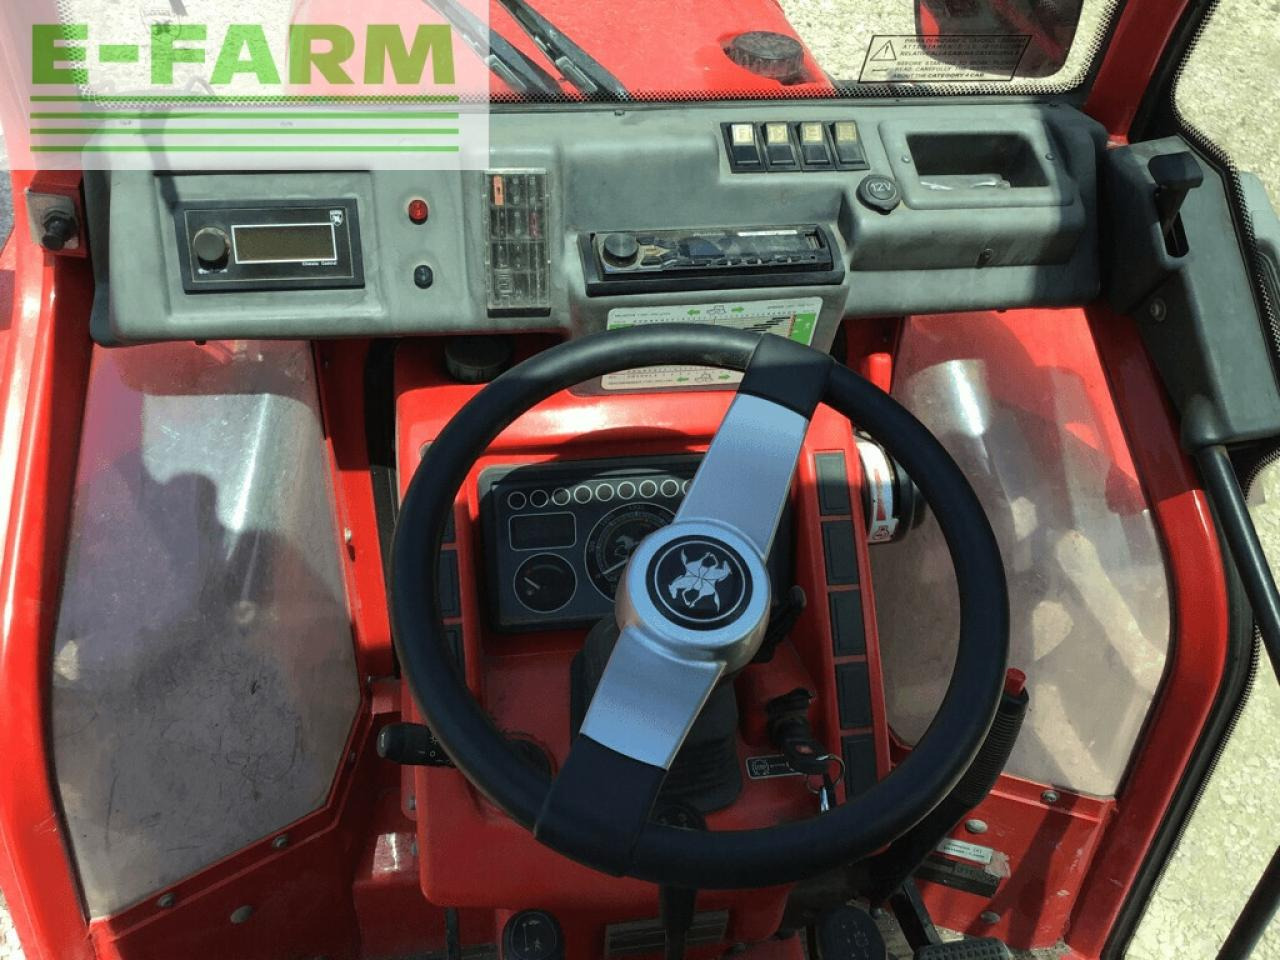 Farm tractor Carraro tgf 7800 s: picture 8